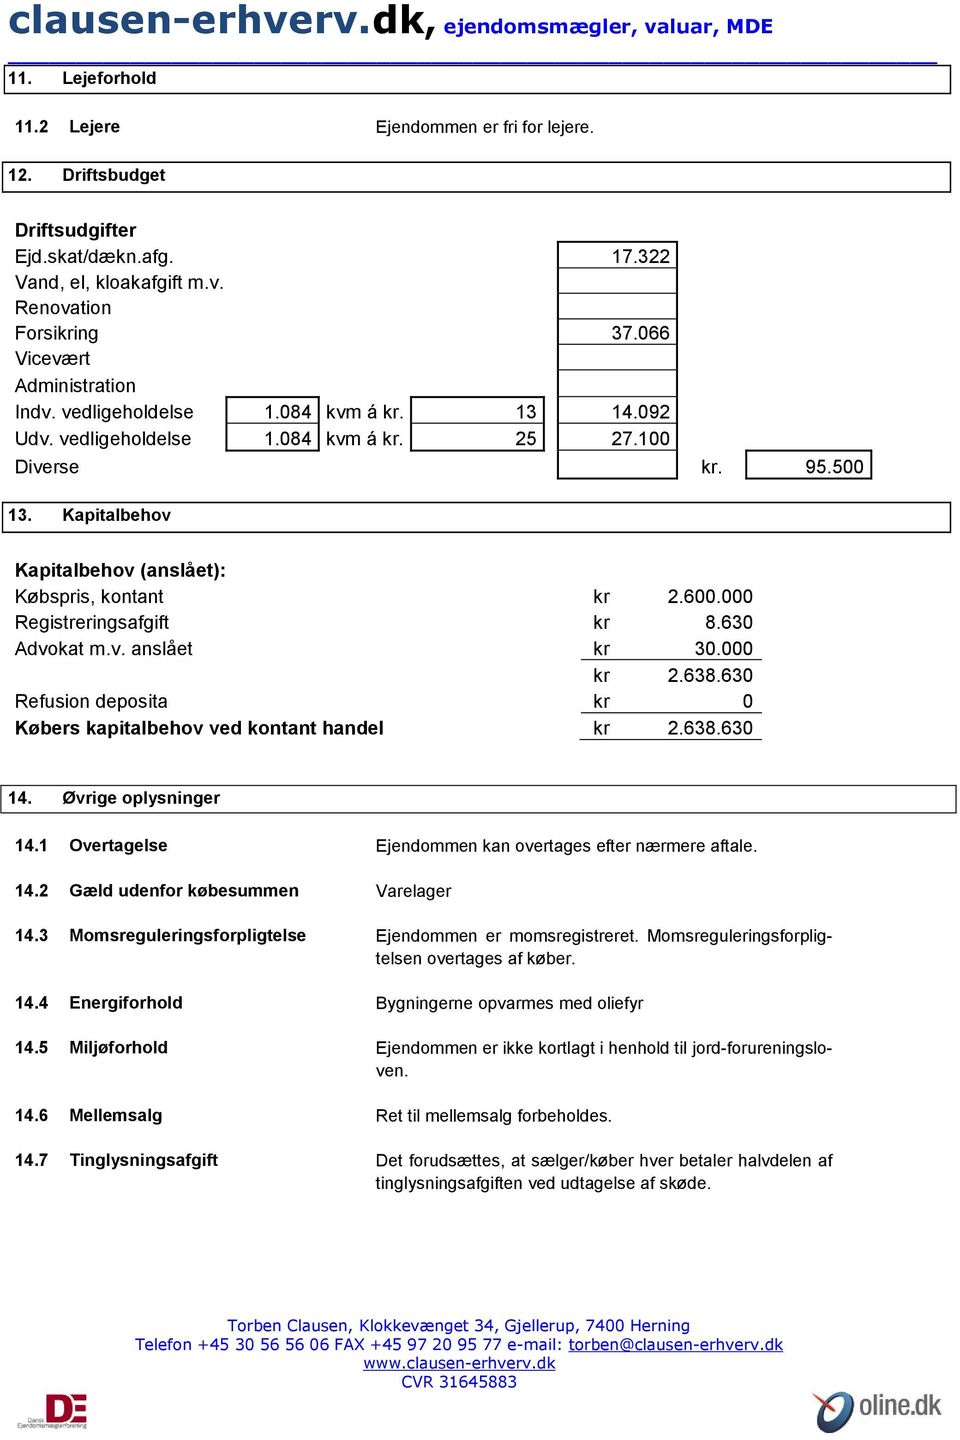 Kapitalbehov Kapitalbehov (anslået): Købspris, kontant kr 2.600.000 Registreringsafgift kr 8.630 Advokat m.v. anslået kr 30.000 kr 2.638.